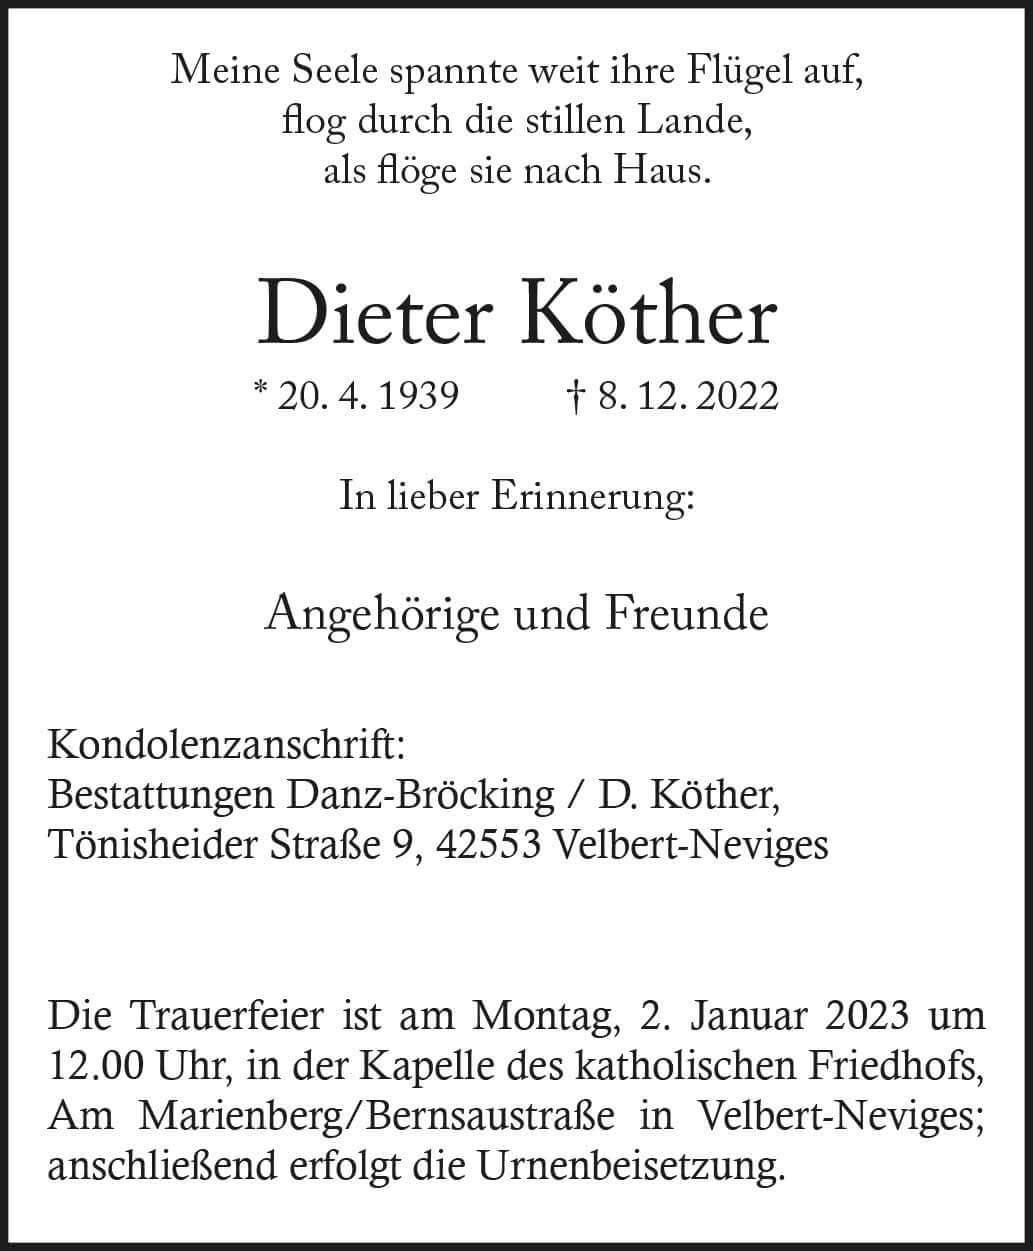 Dieter Köther † 8. 12. 2022